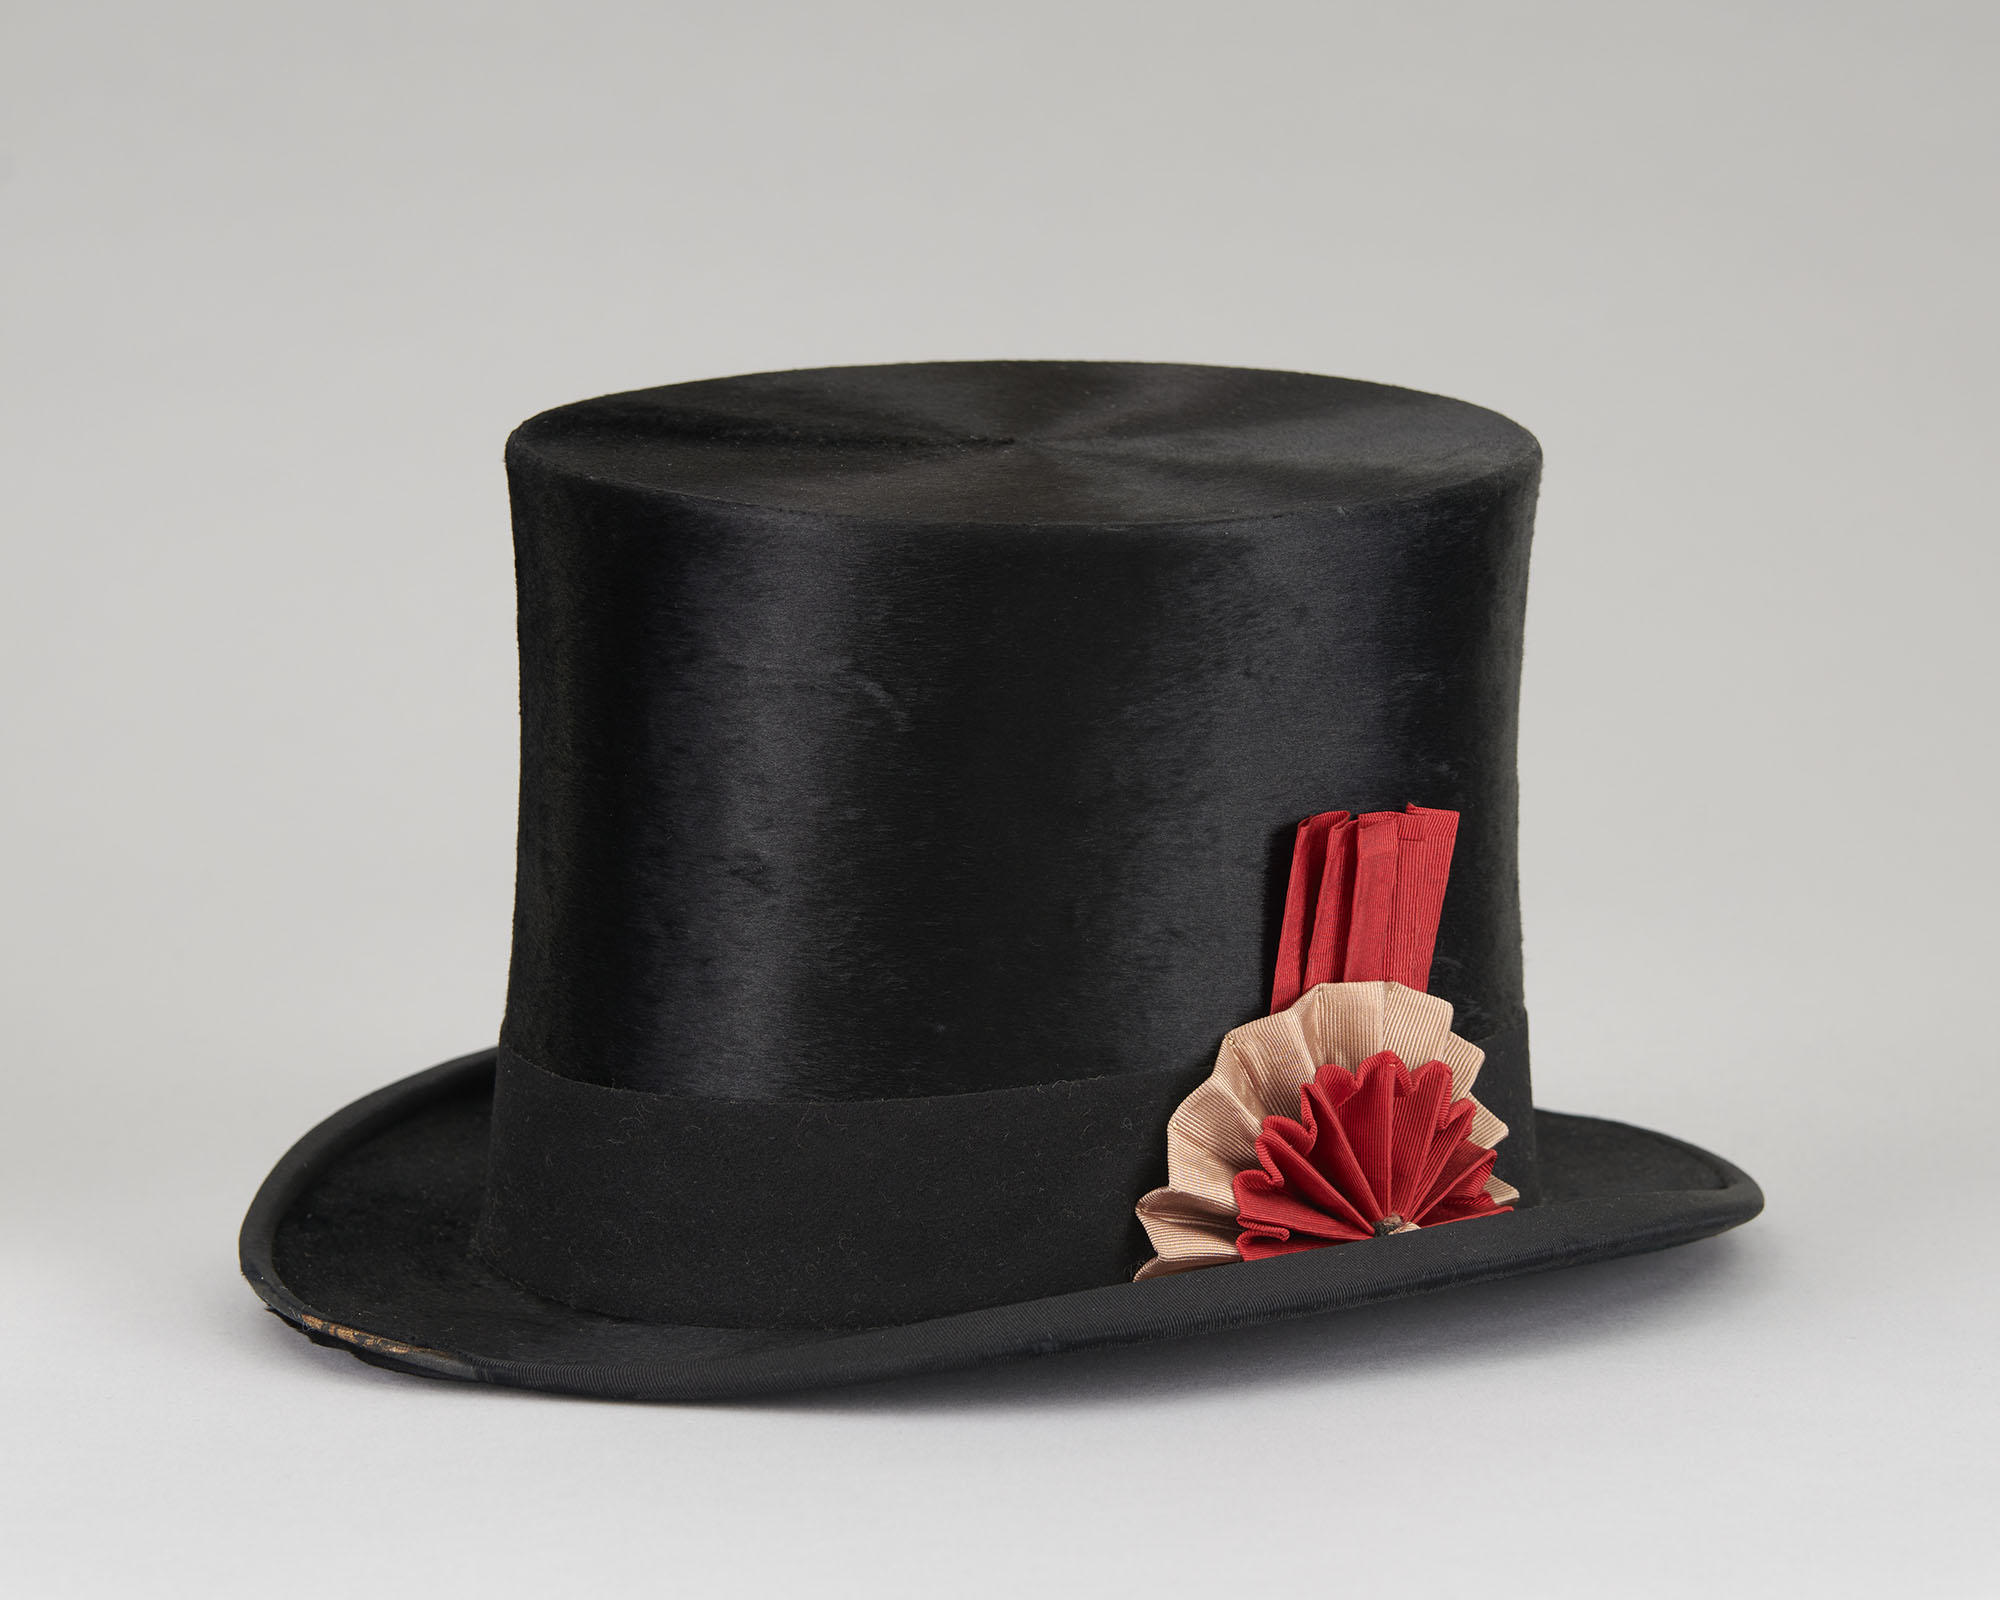 Top Hat belonging to Jack Gardne